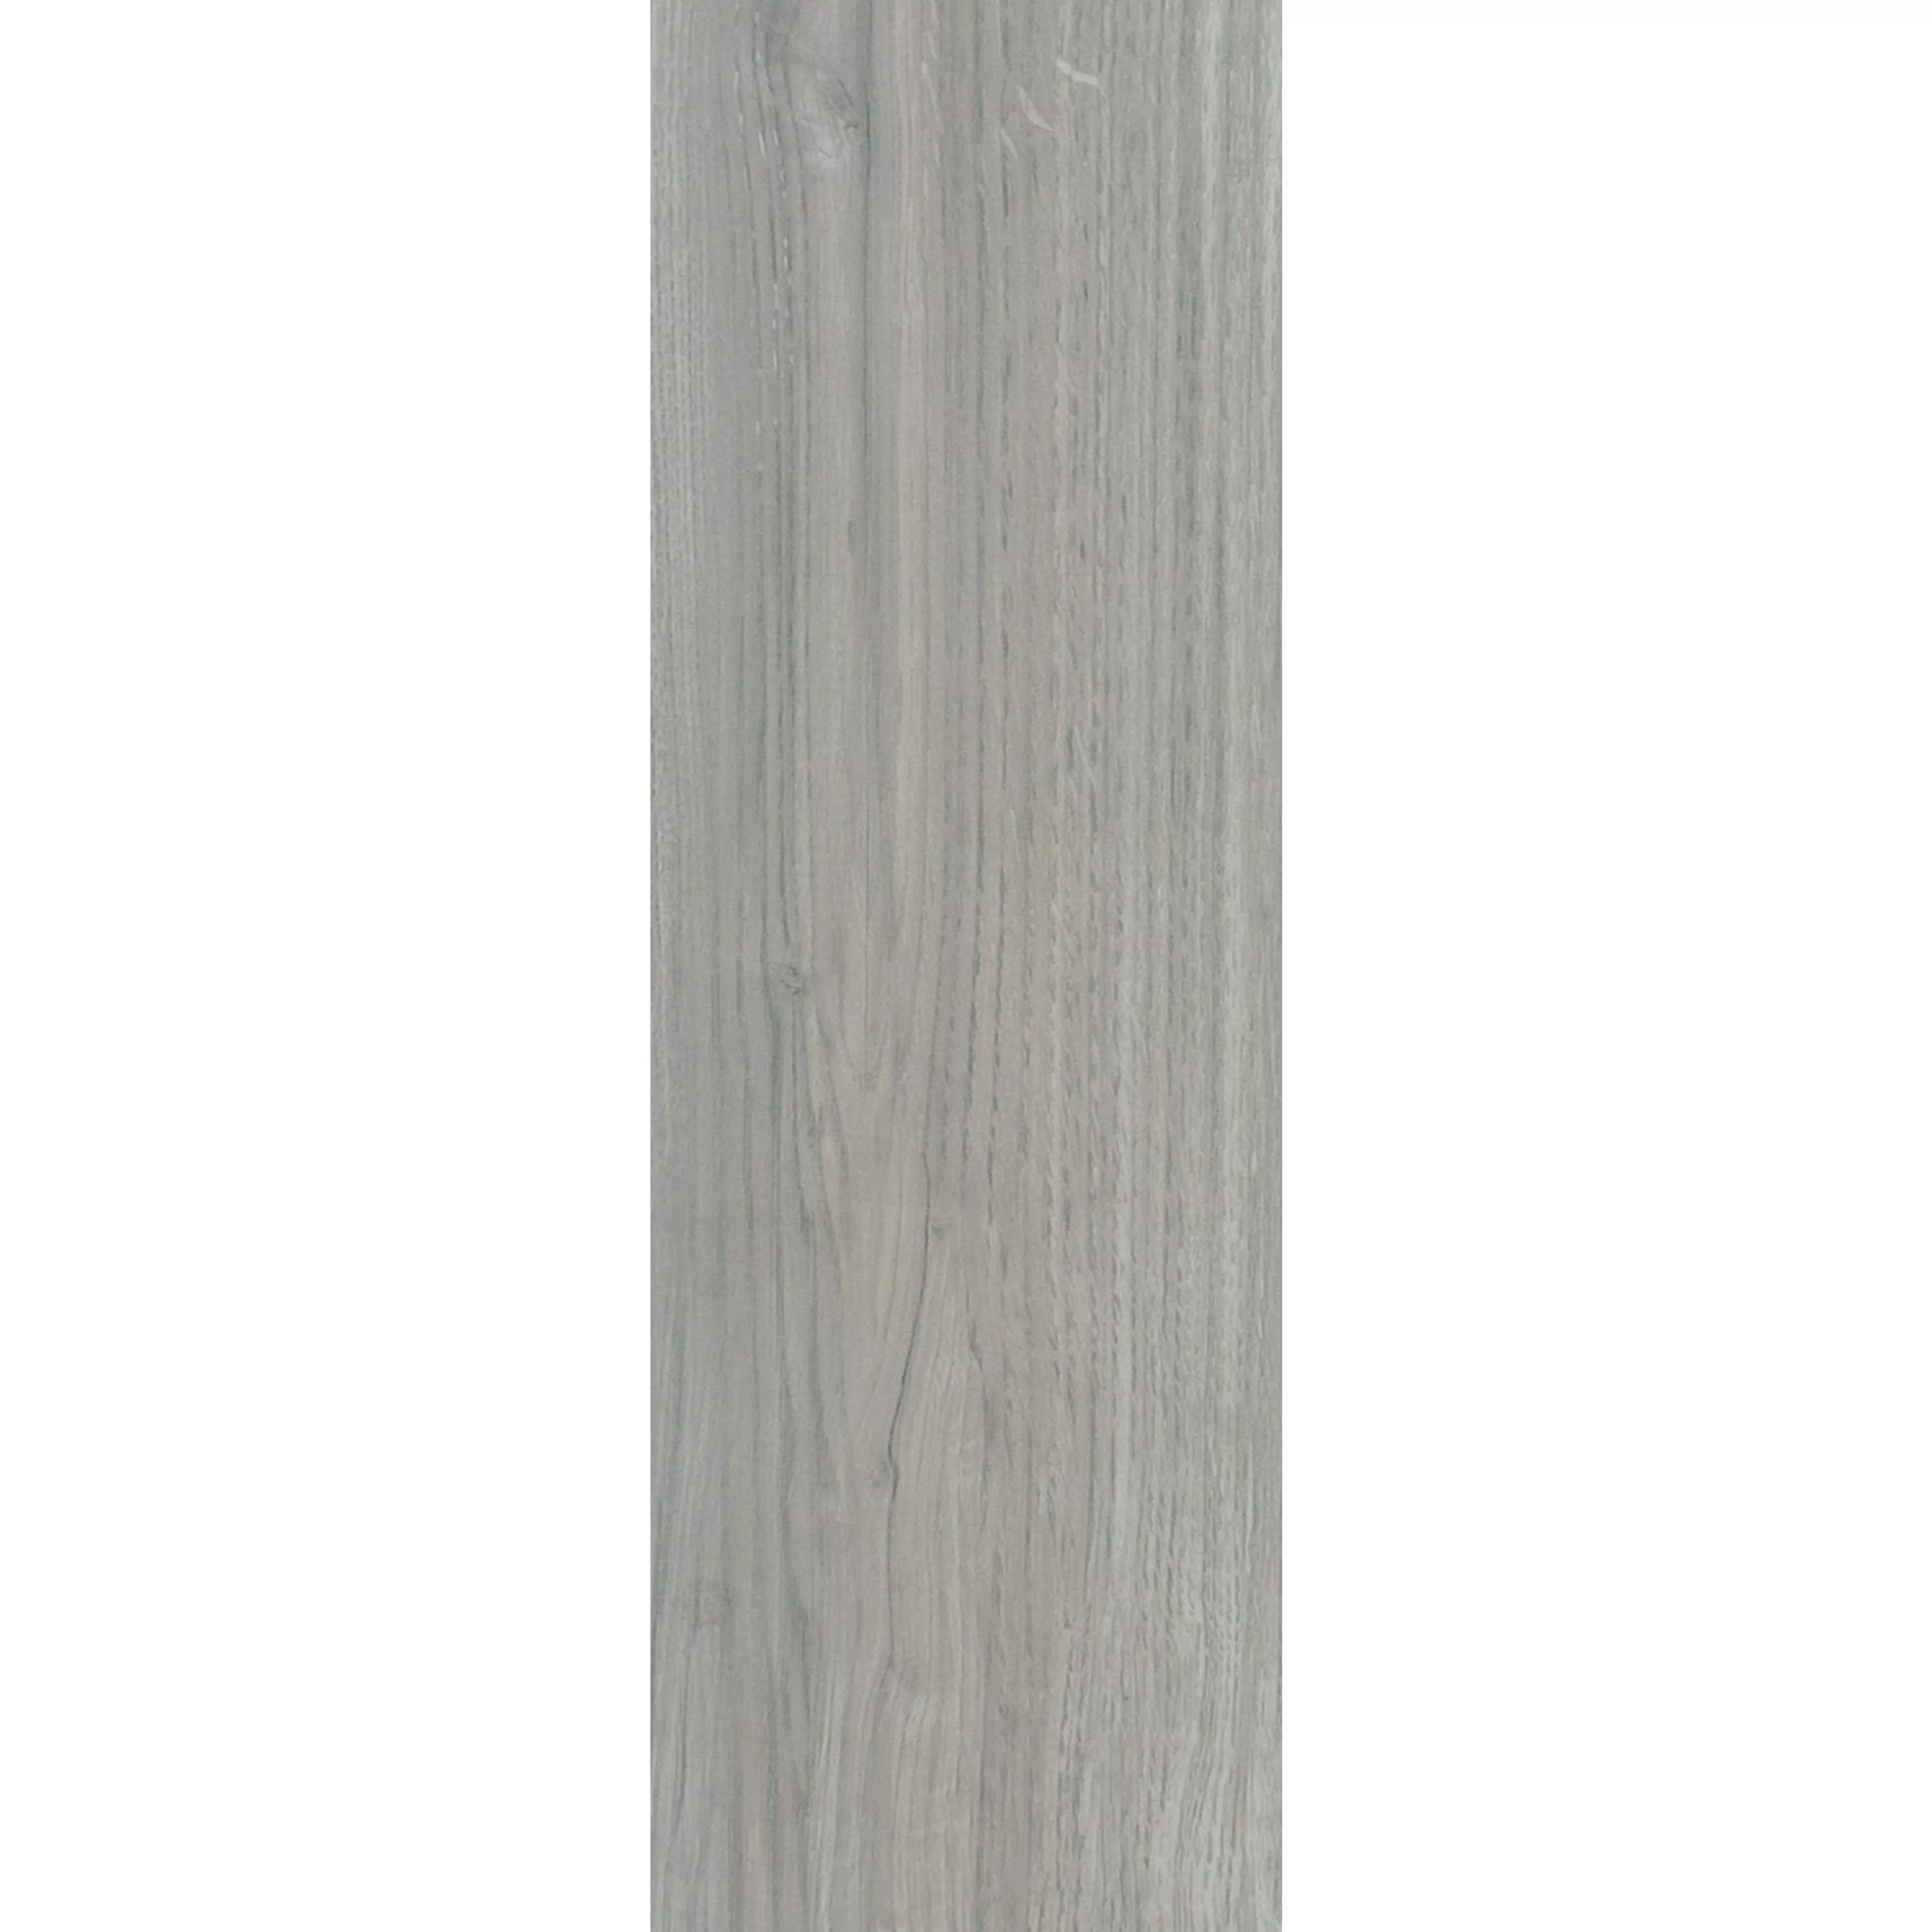 Próbka Płytki Podłogowe Wygląd Drewna Fullwood Beżowy 20x120cm 